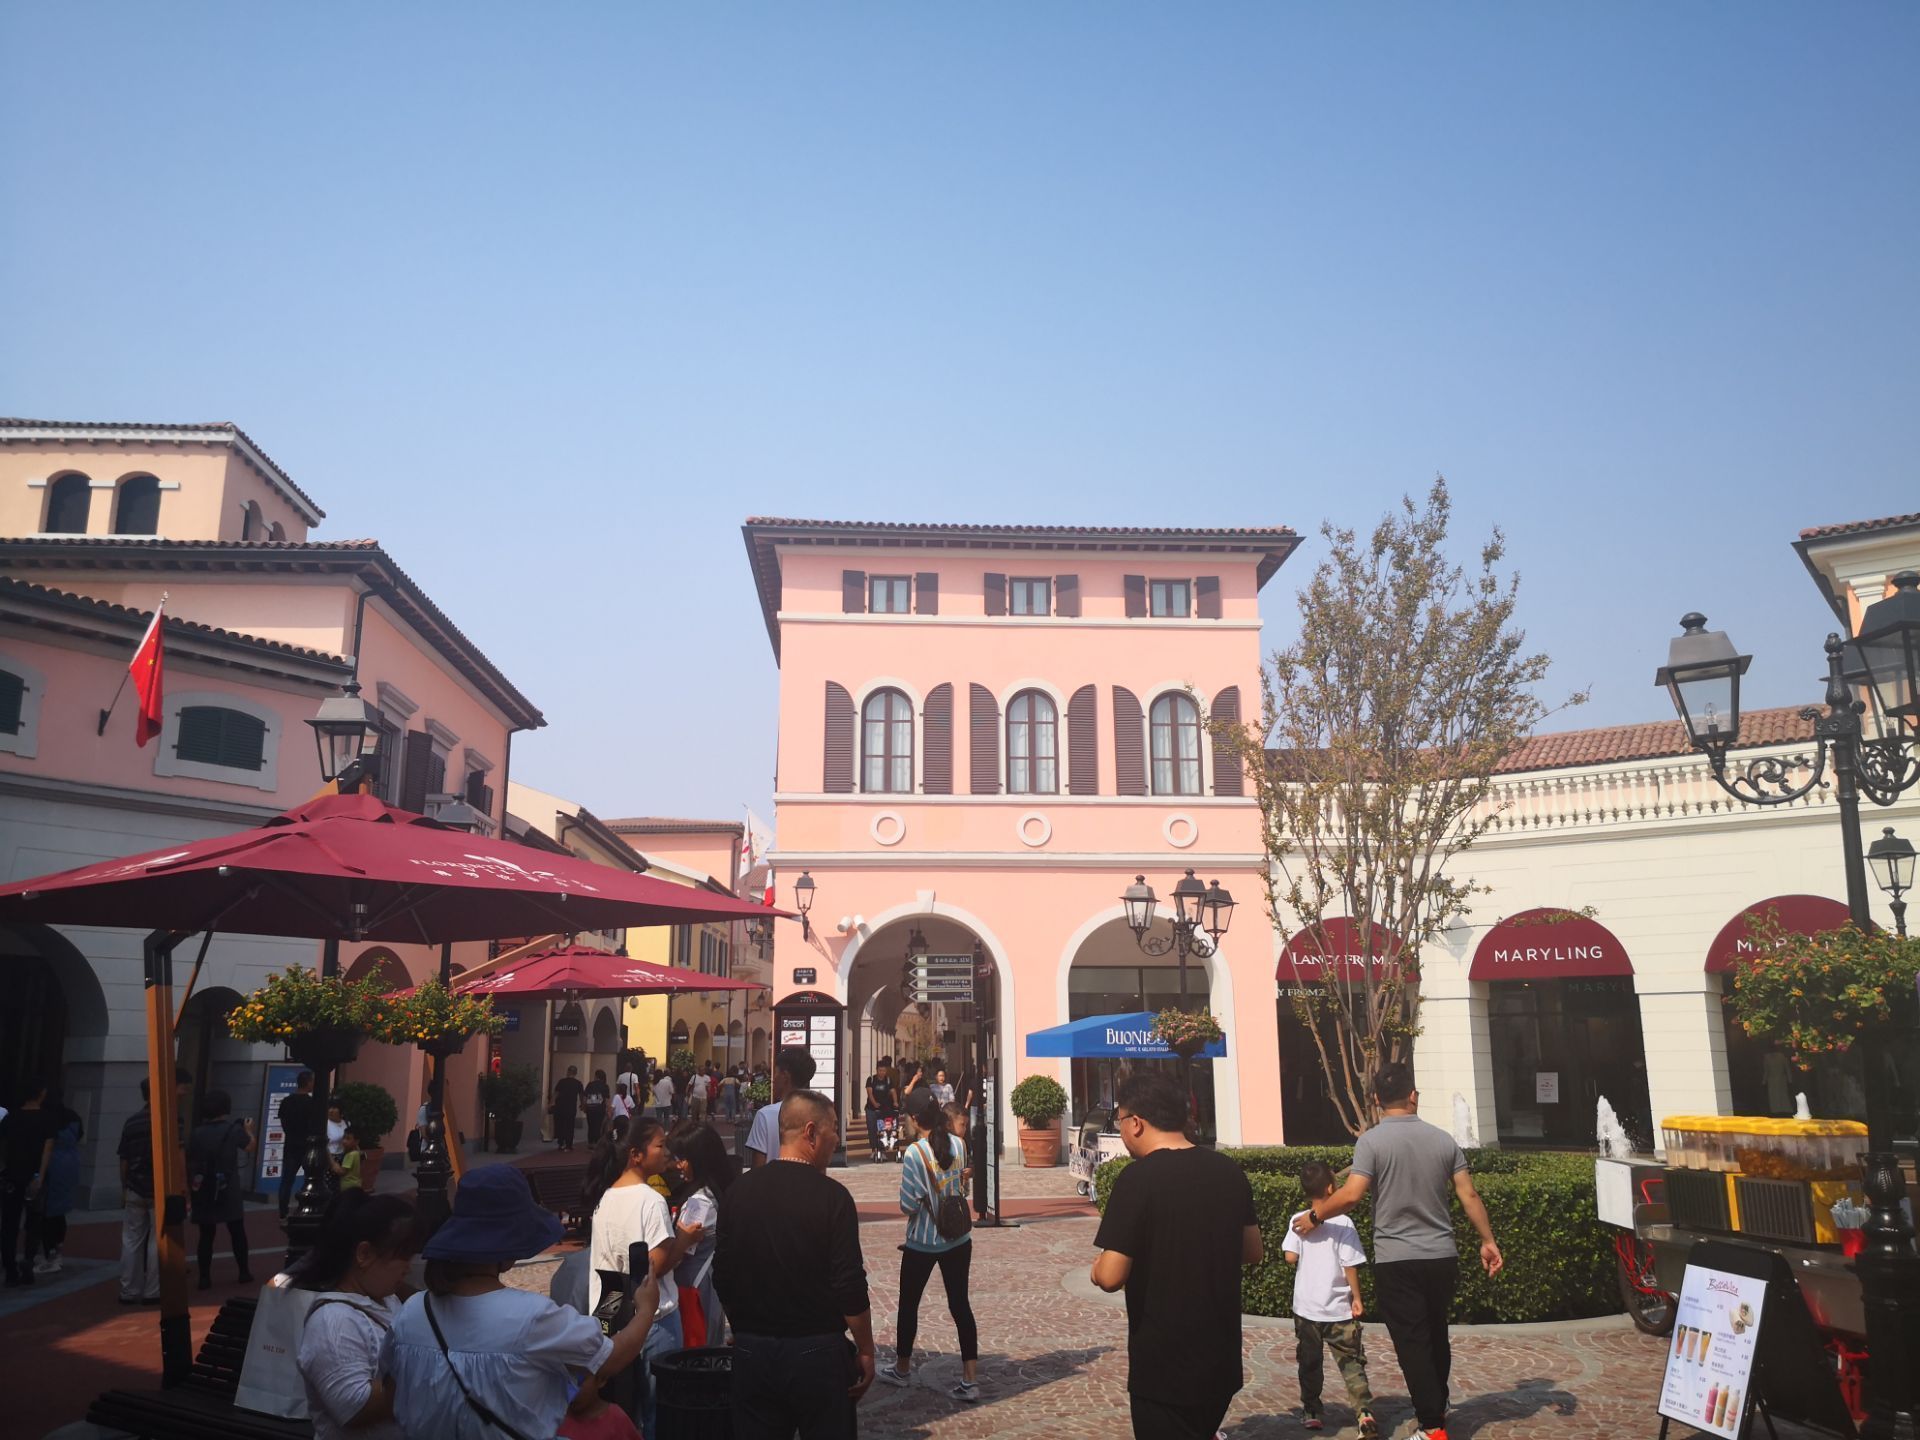 武清购物,天津武清的奥特莱斯名字叫佛罗伦萨小镇,整个建筑是意大利